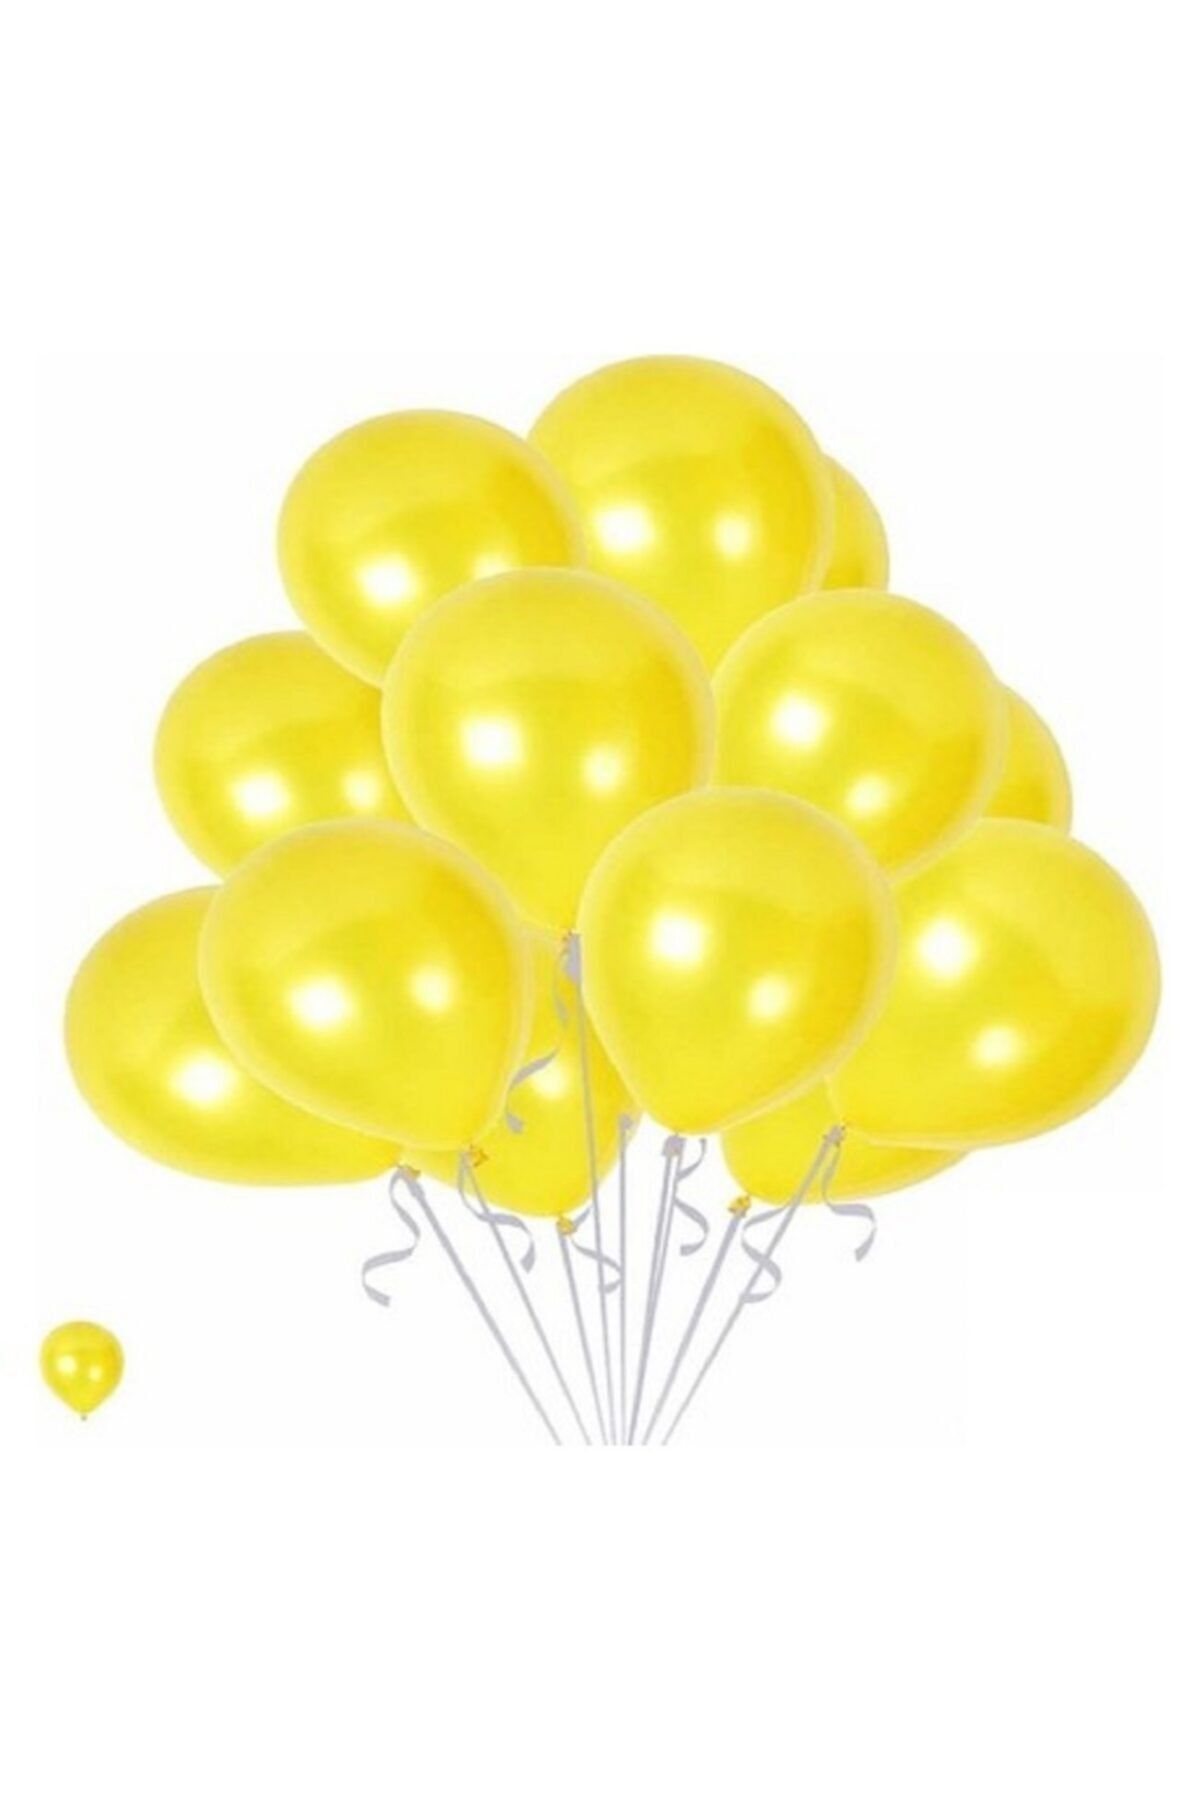 HKNYS 50 Adet Metalik Sedefli Karışık Balon - 5 mt Balon Zinciri